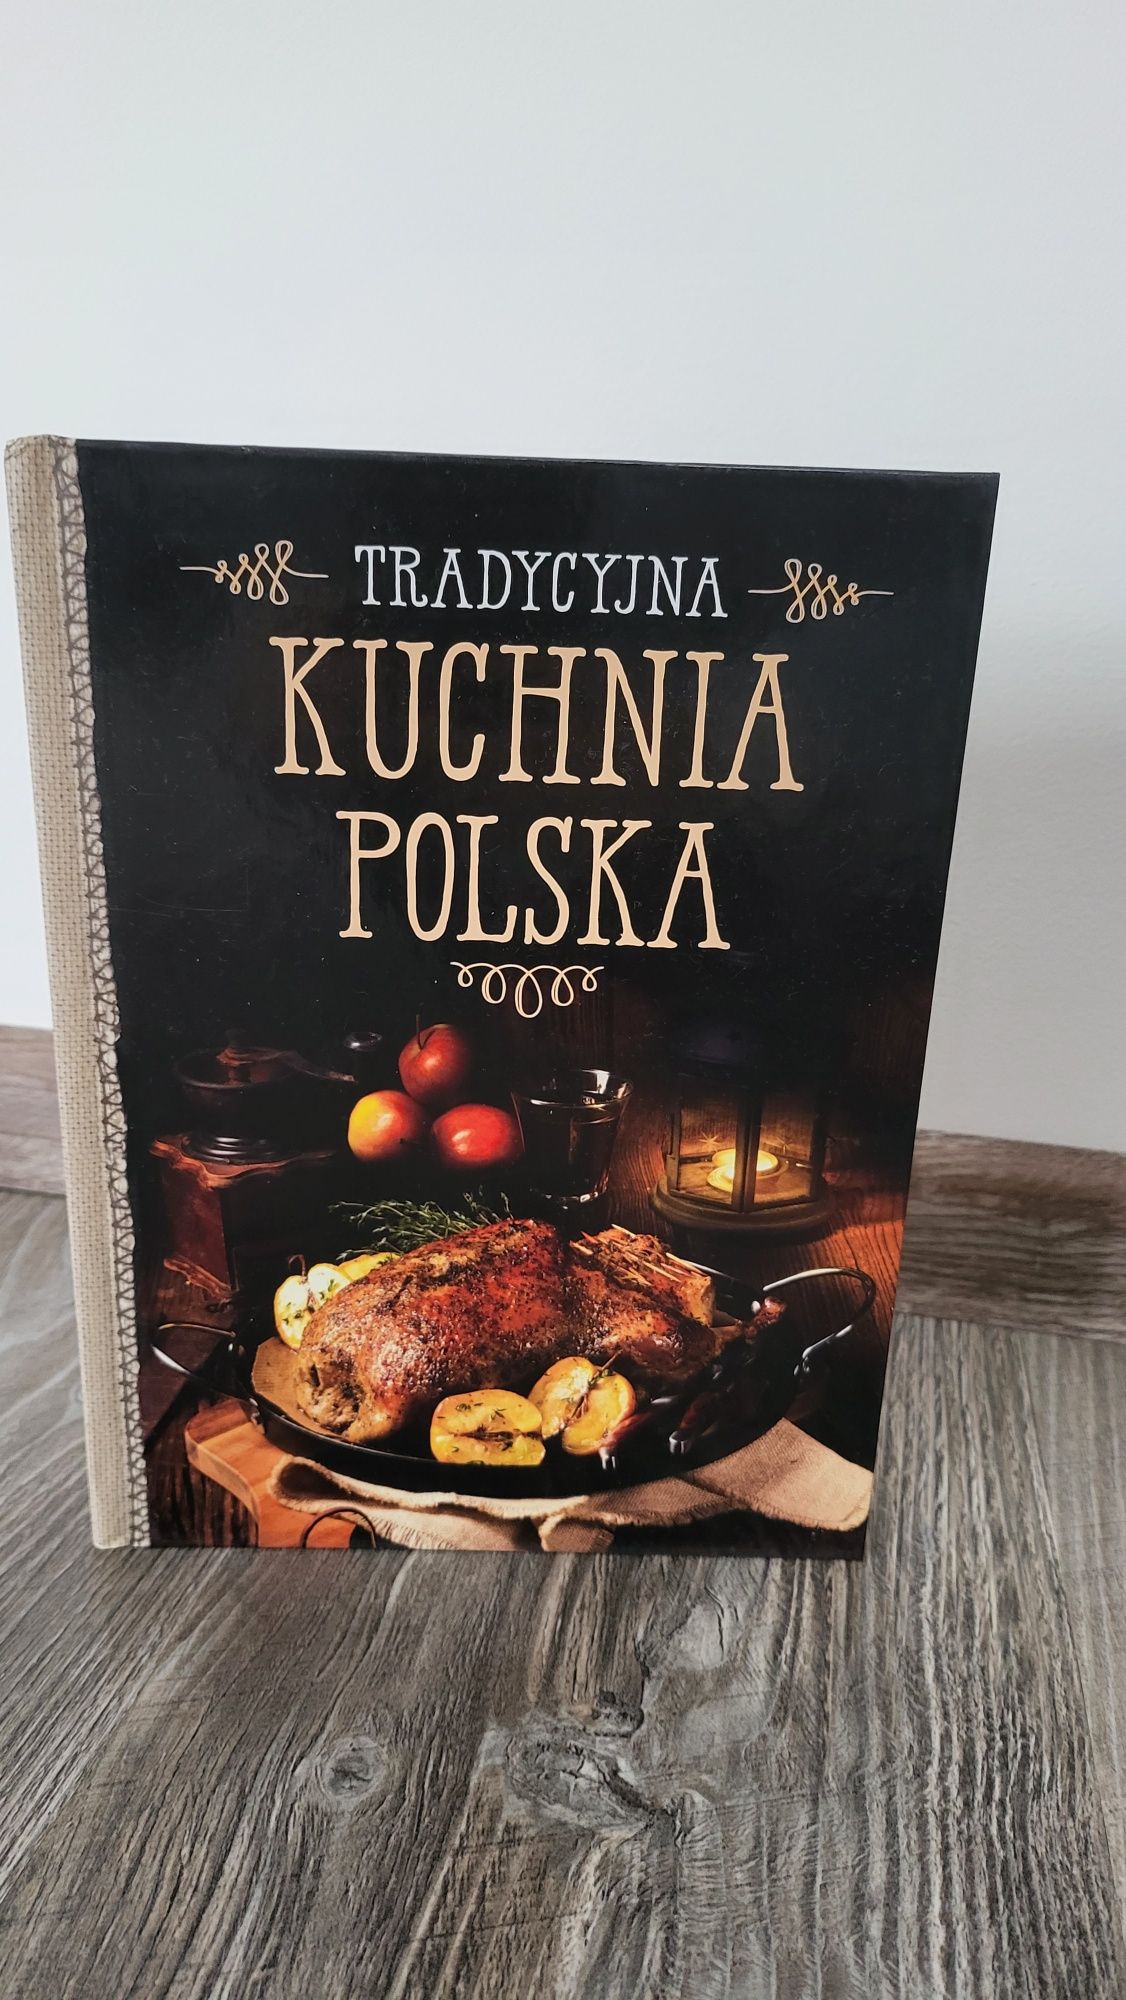 Kuchnia polska, Tradycyjna kuchnia polska